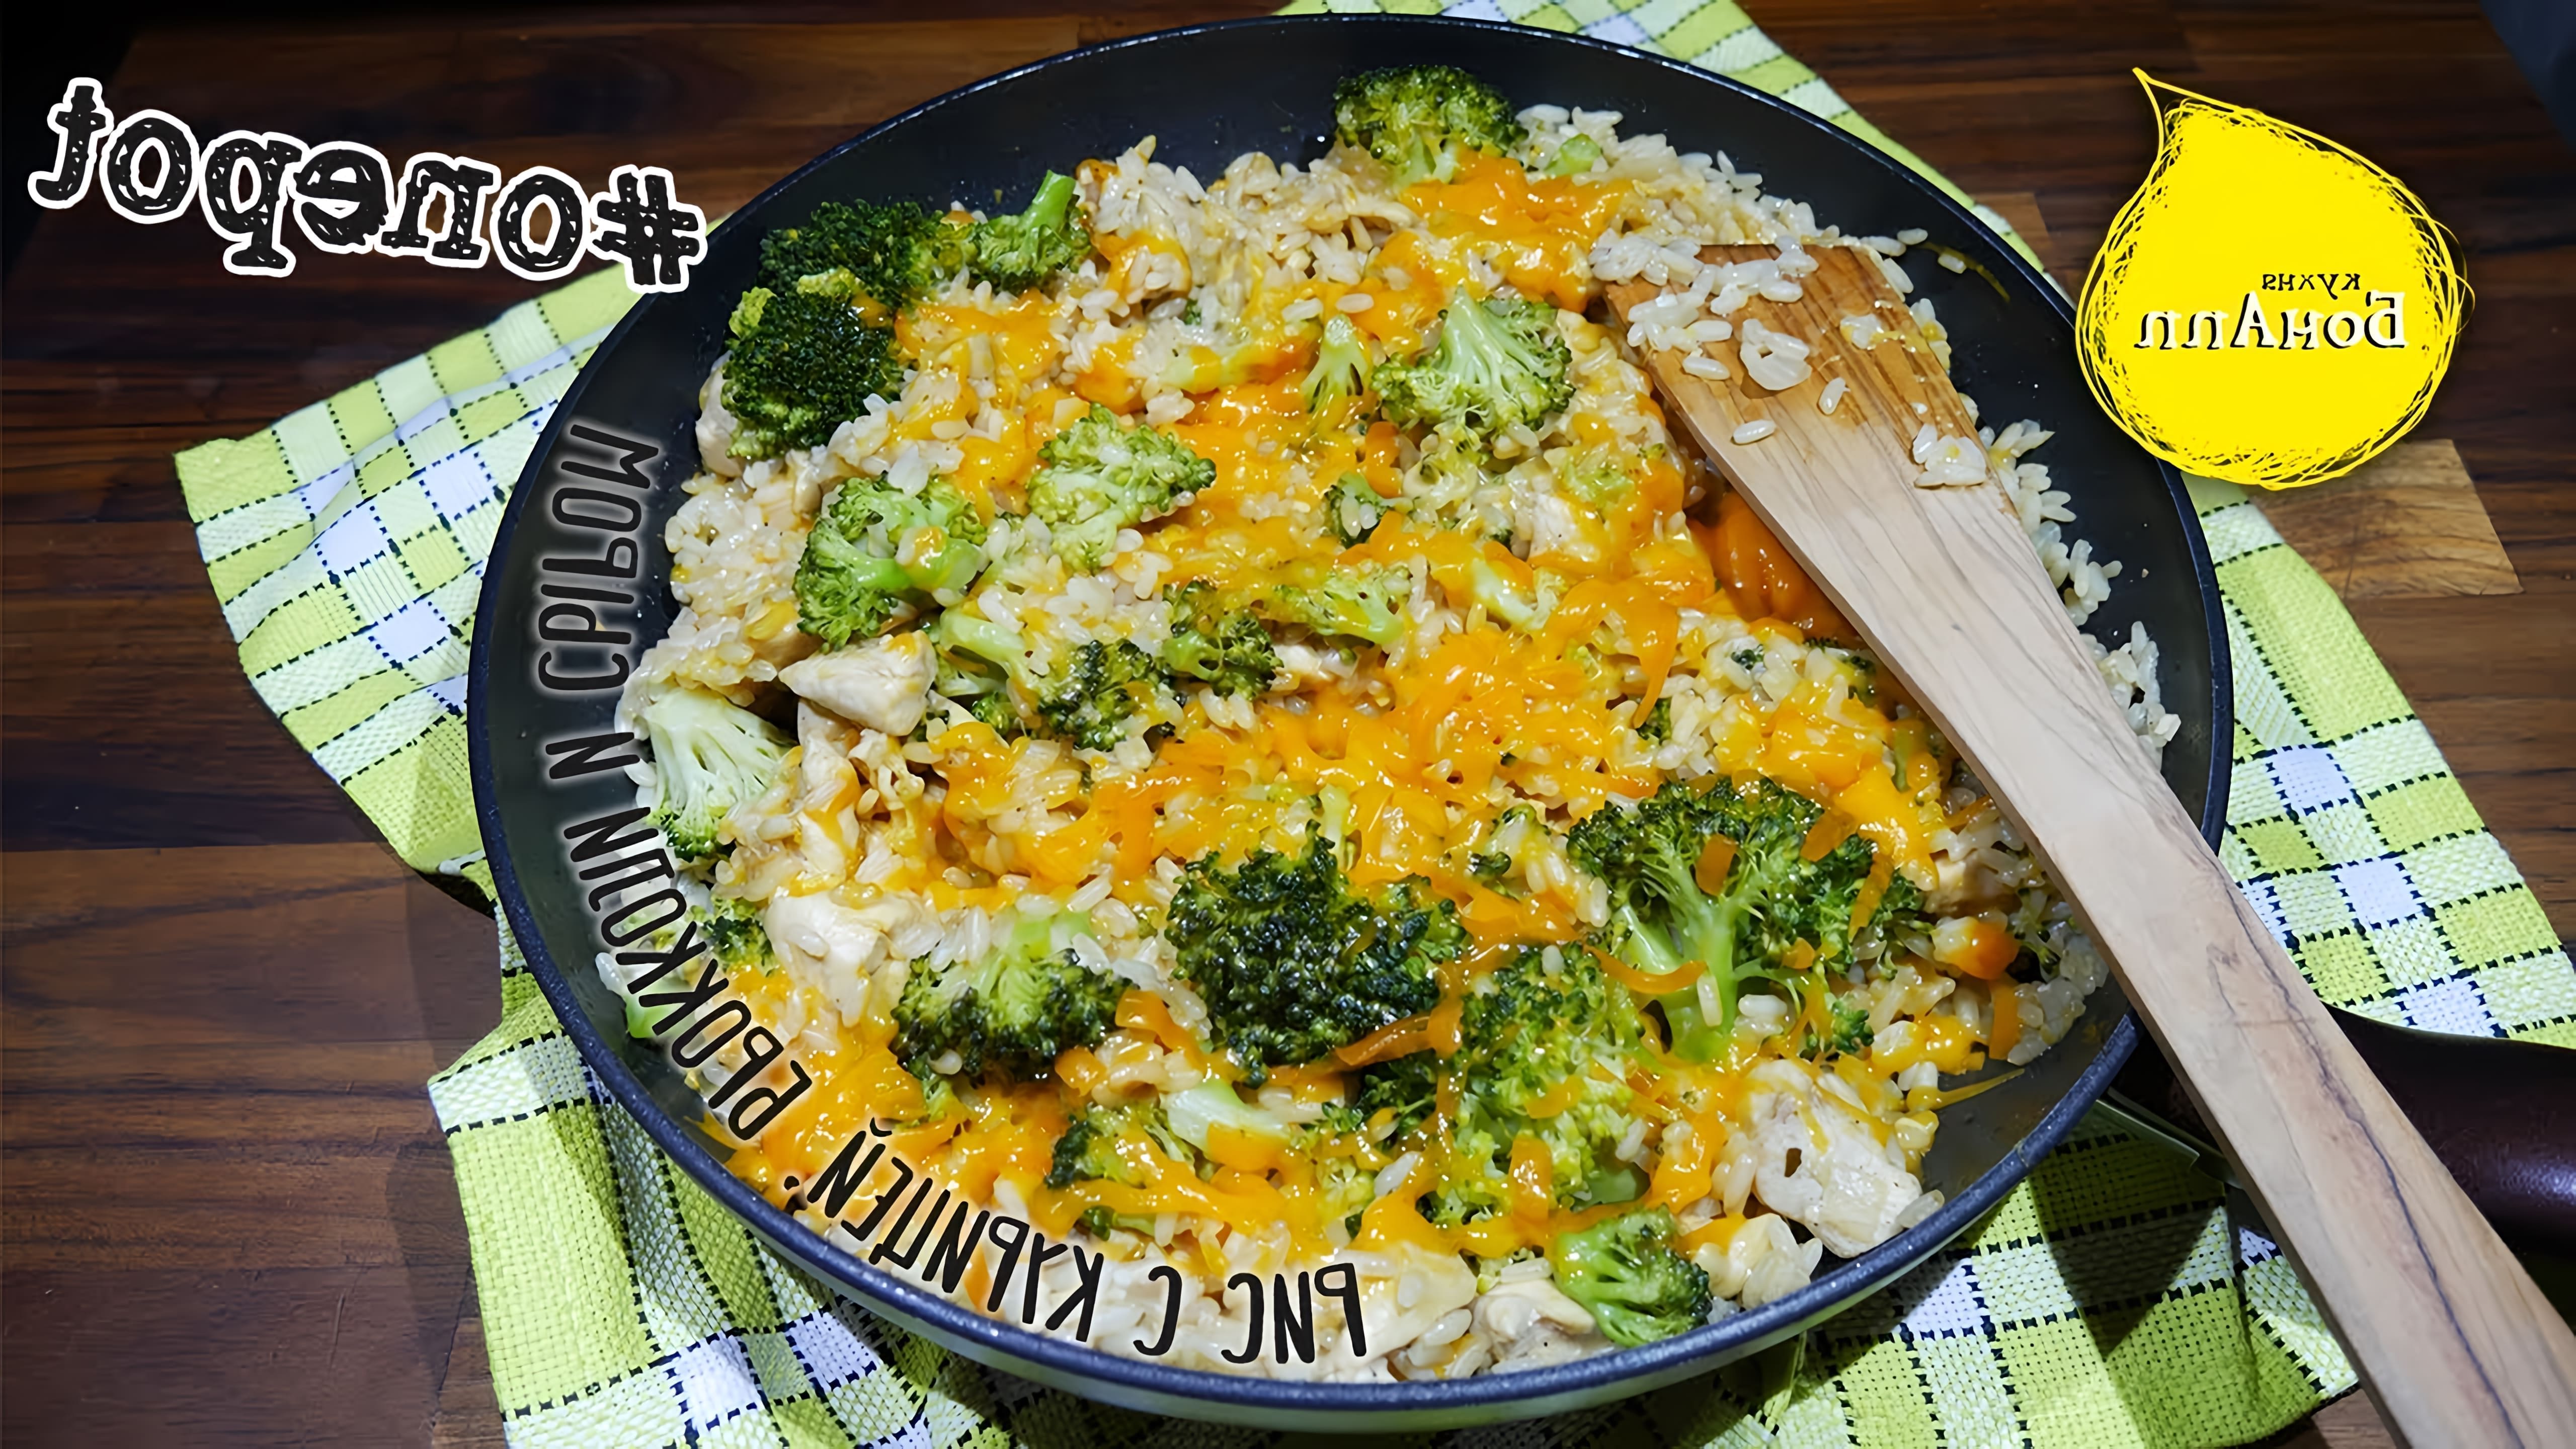 В этом видео демонстрируется процесс приготовления риса с курицей, брокколи и сыром